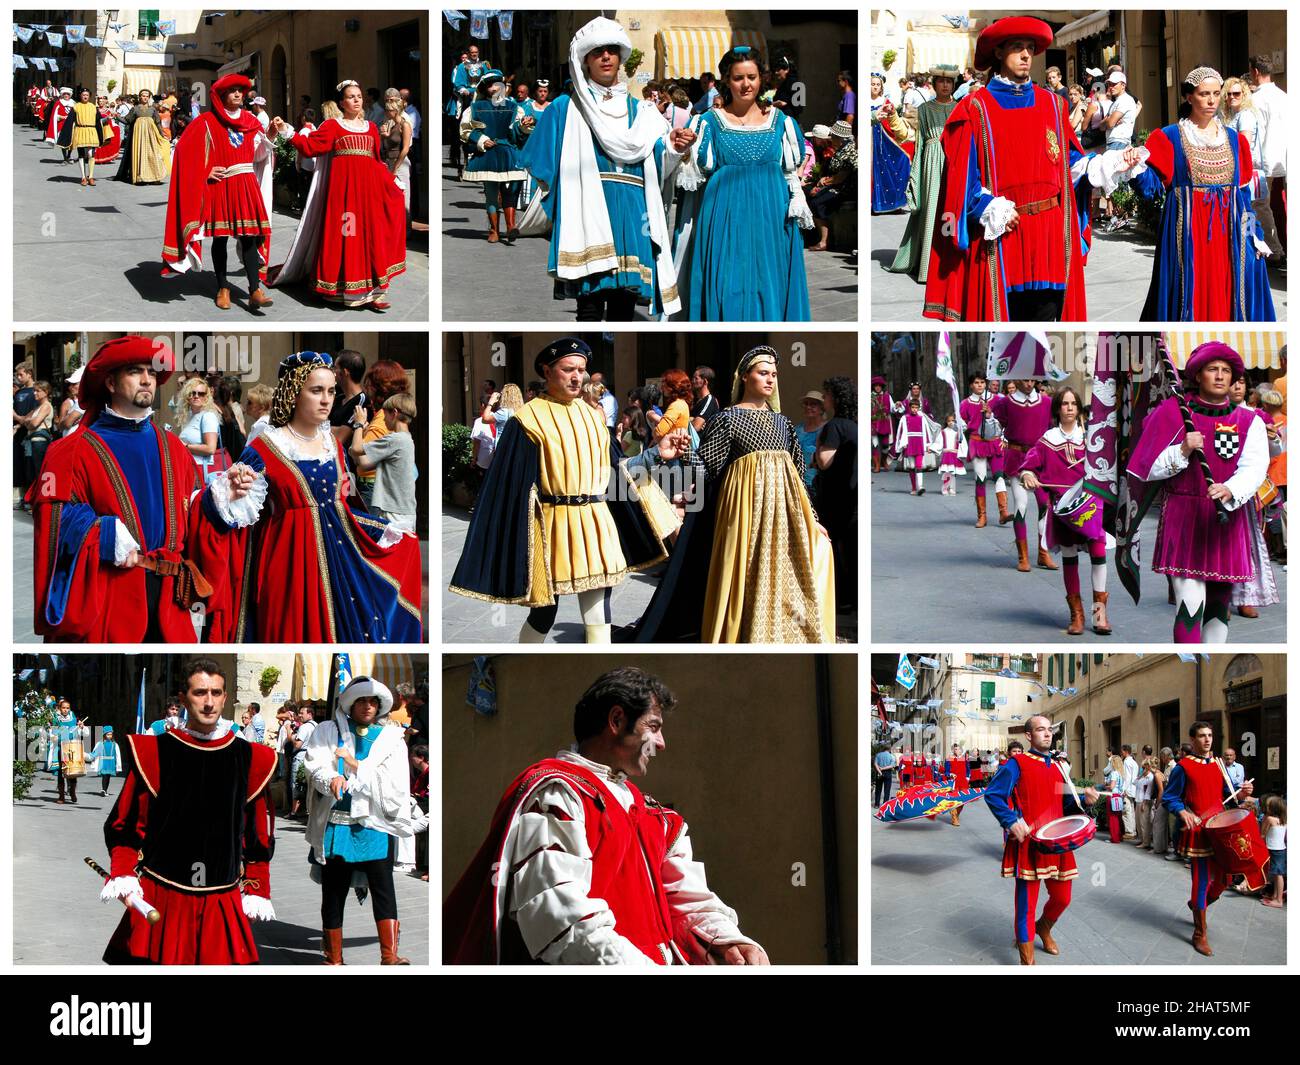 Sarteano - Italie - 15 août 2018 : Collage photo du joust médiéval de Saracen.Giostra del Saracino.Défilé dans les rues de Sarteano avant Joustin Banque D'Images